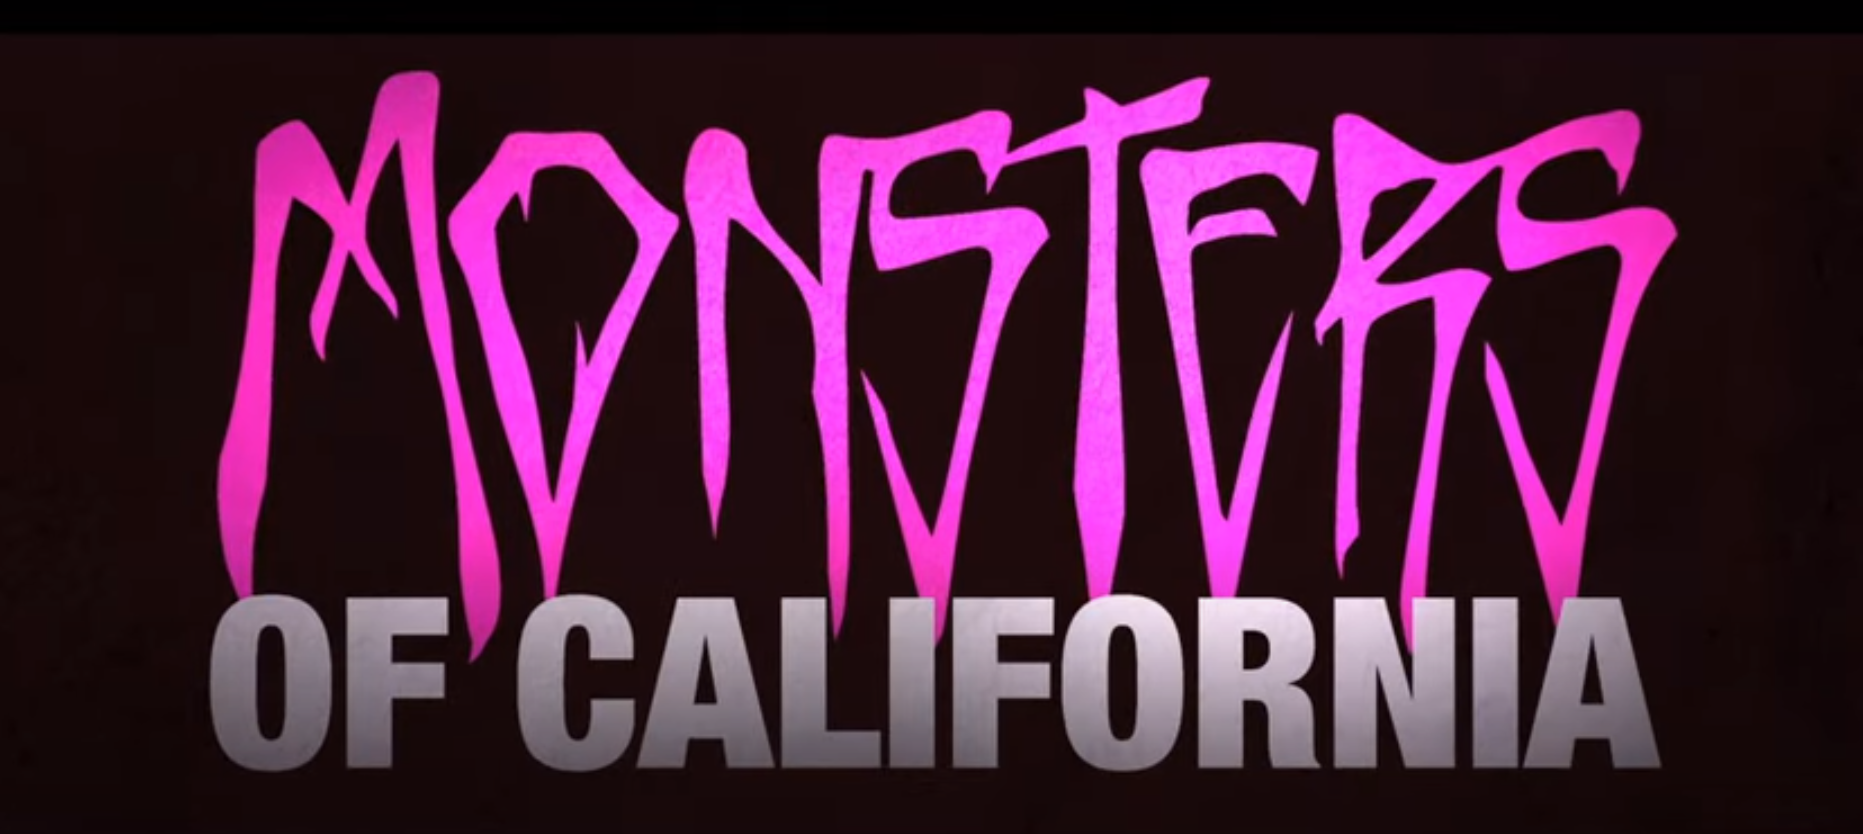 New trailer for Tom DeLonge's Monsters Of California